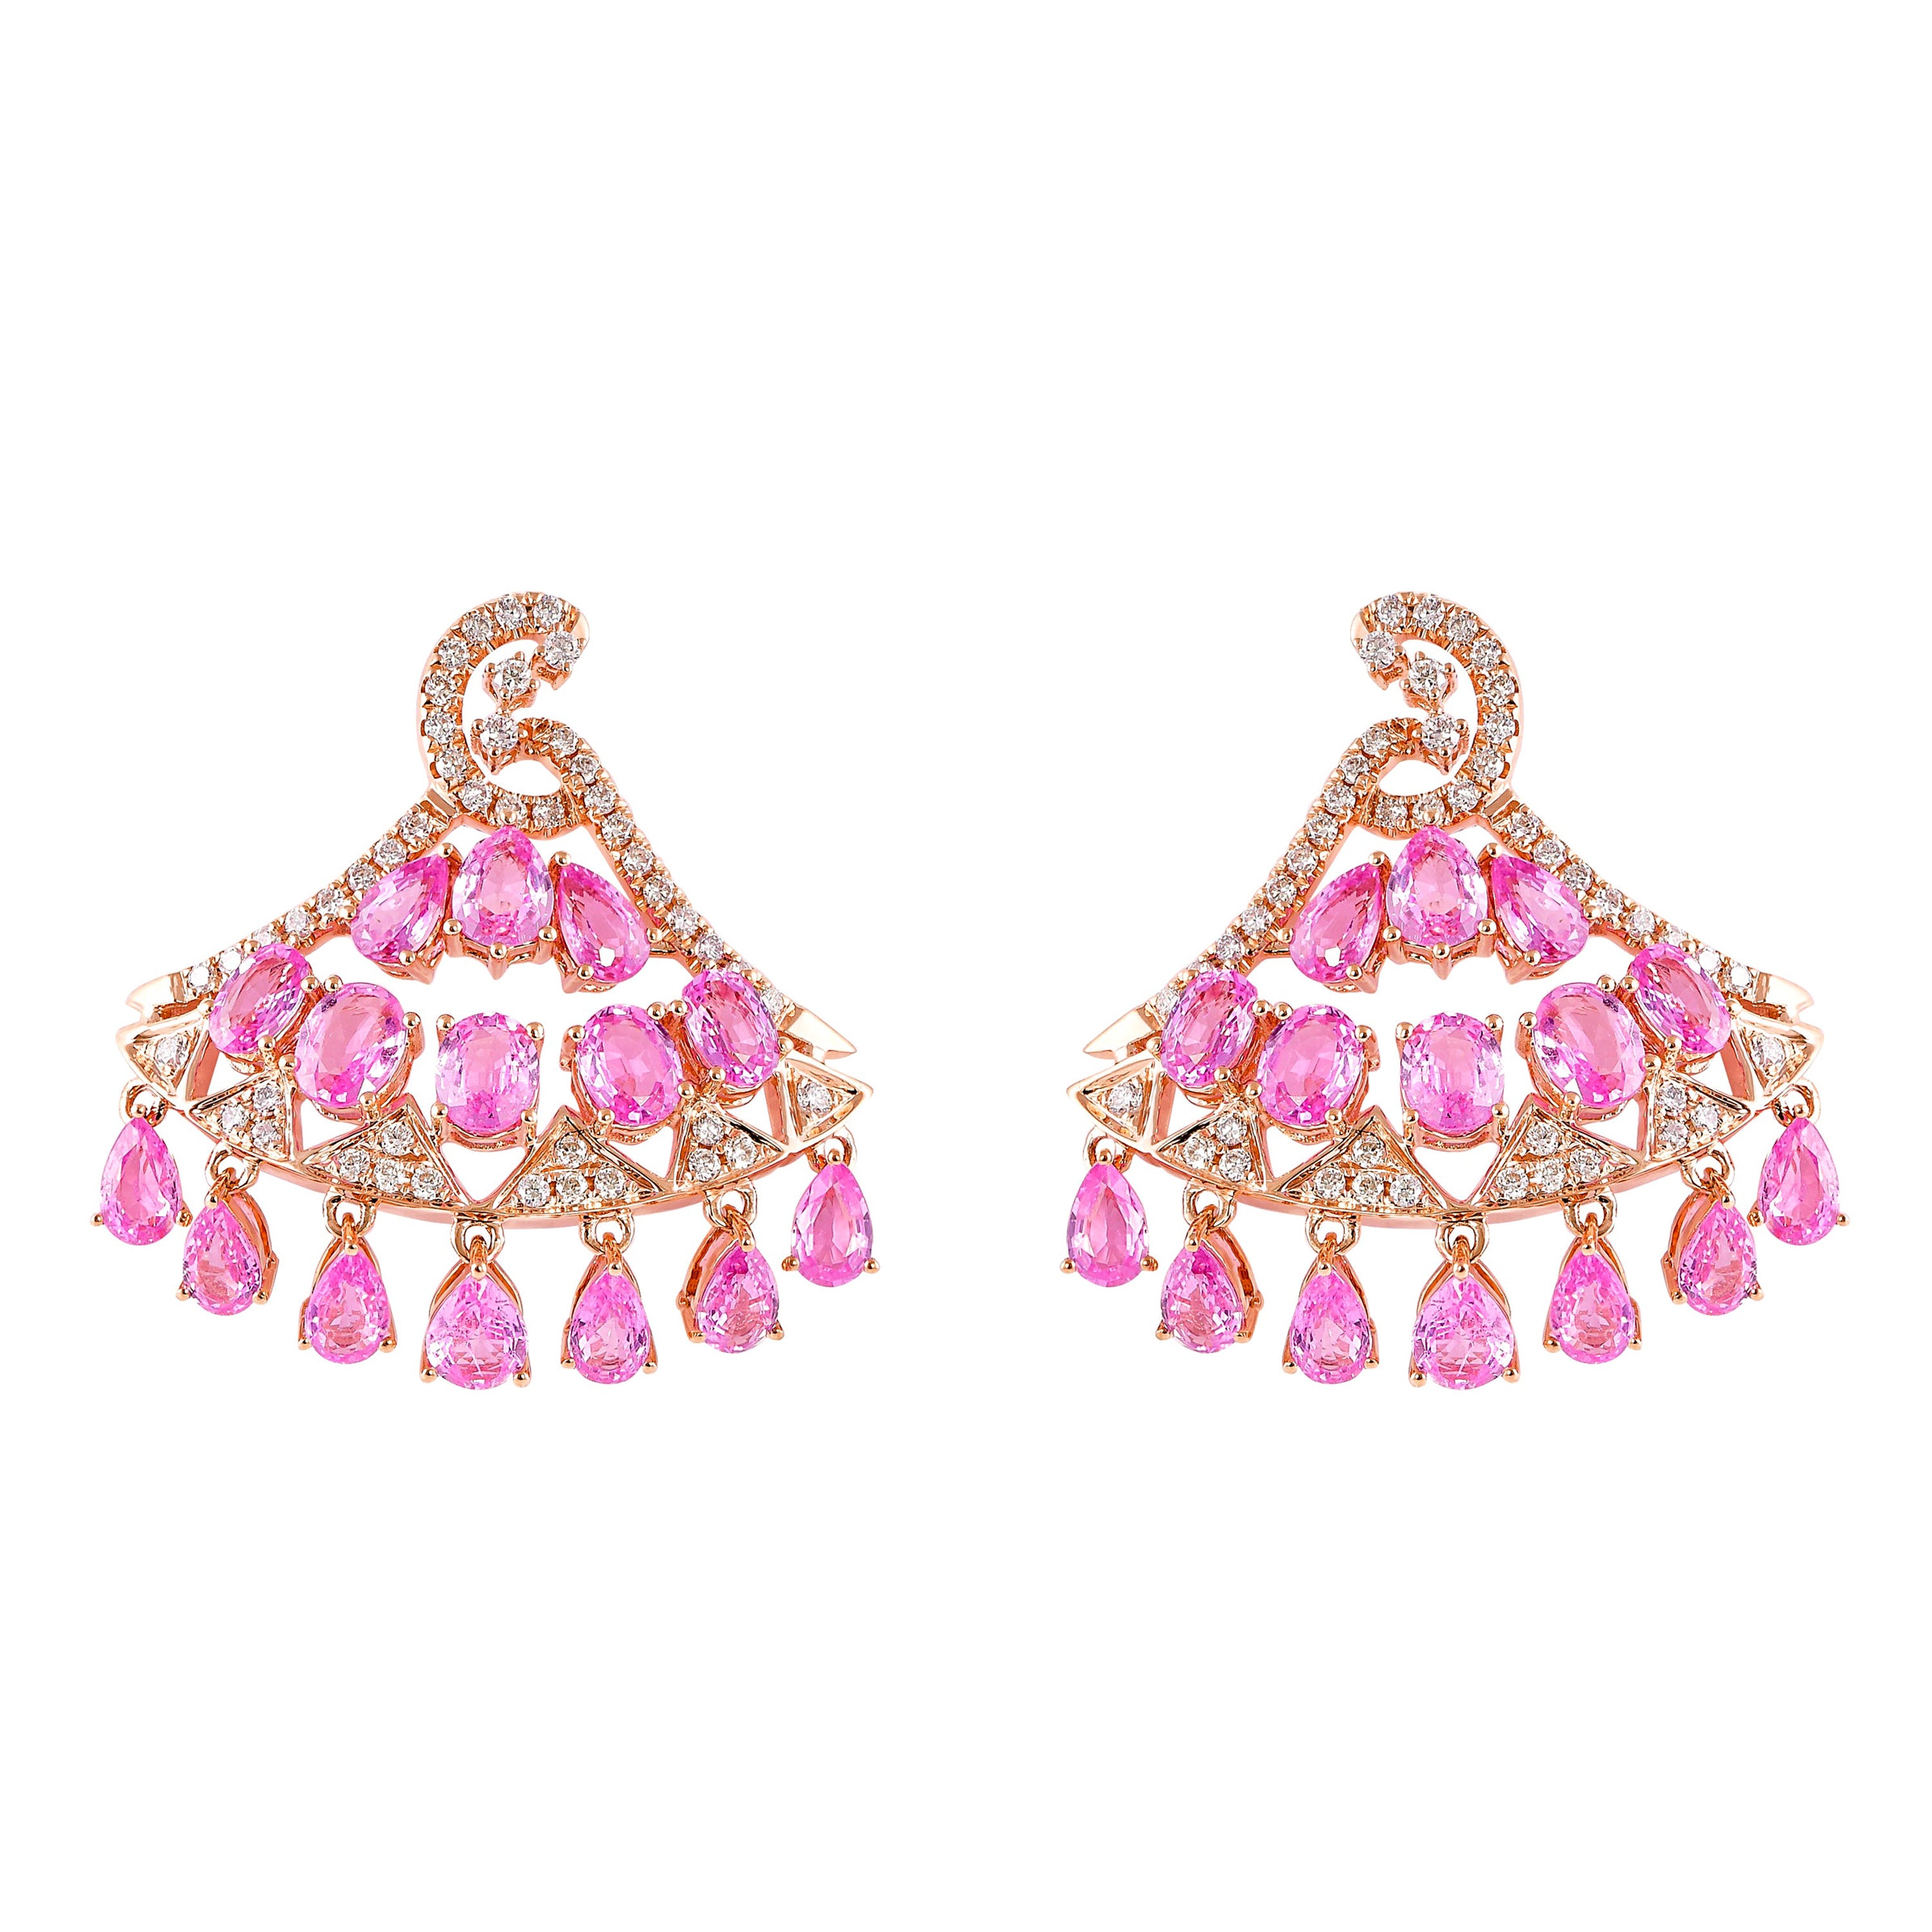 8.3 Carat Pink Sapphire & Diamond Earring in 18 Karat Rose Gold 